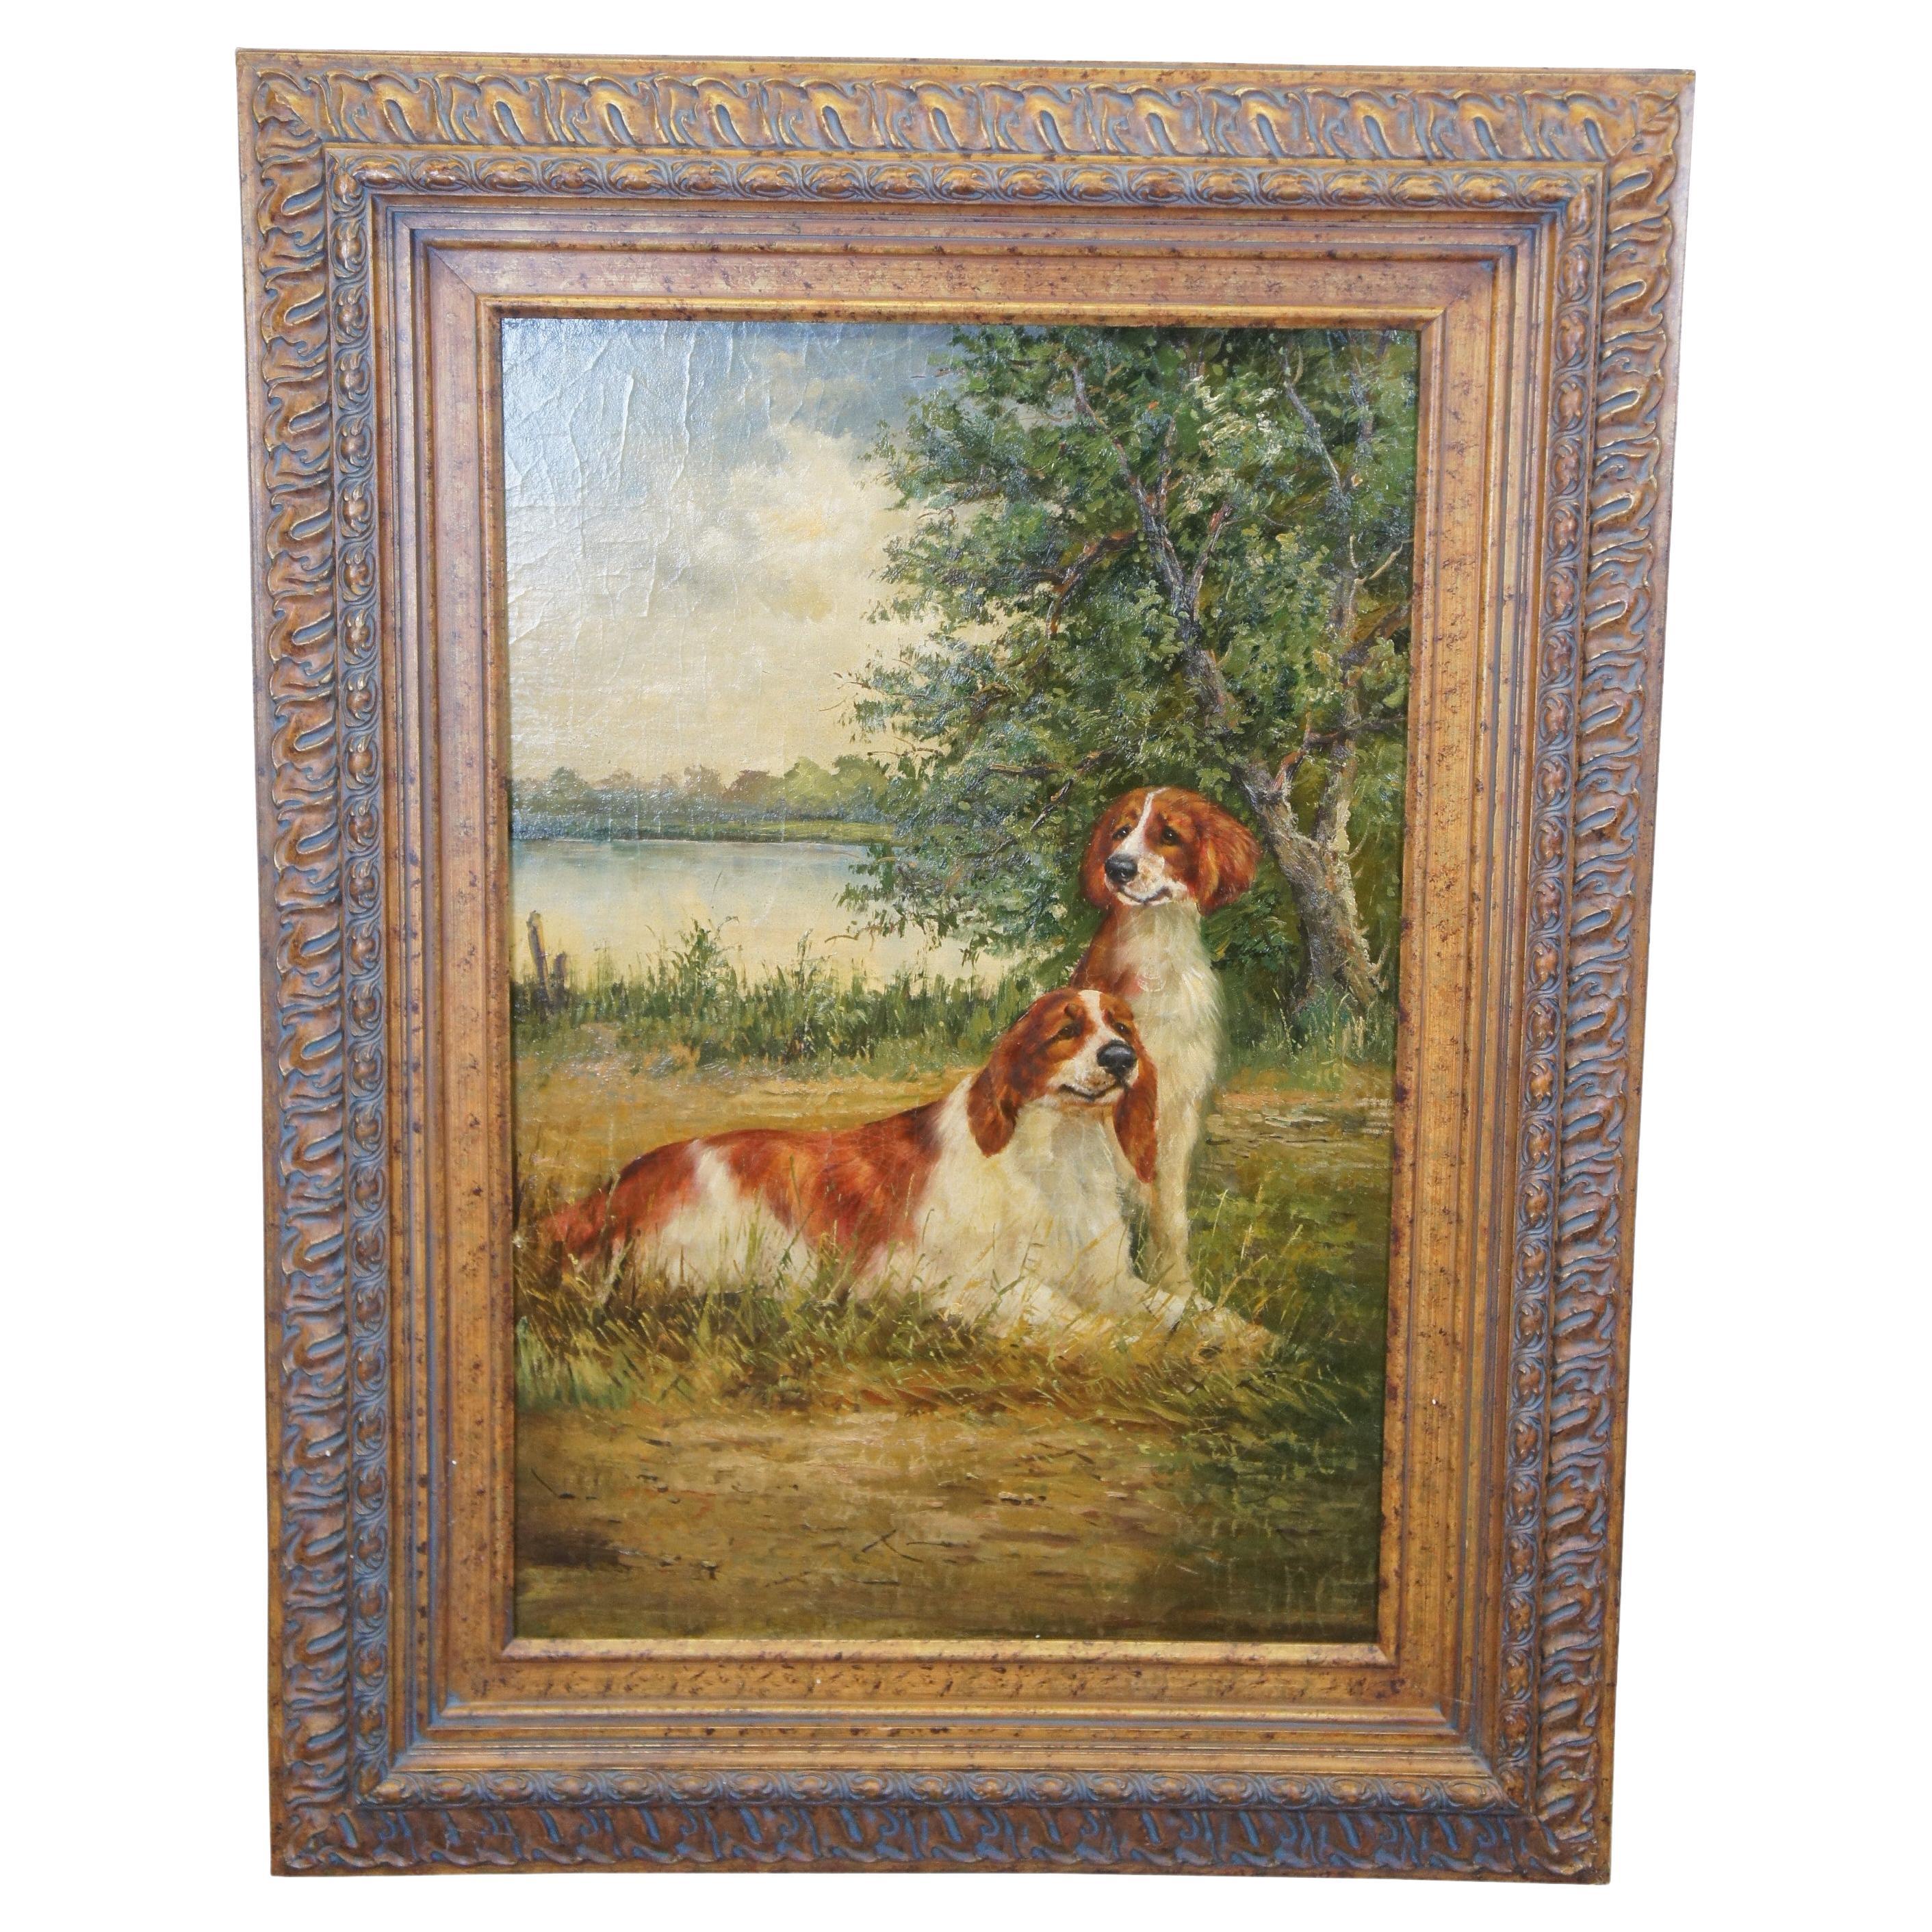 Grand portrait de paysage avec chien épagneul Springer, peinture à l'huile sur panneau 49"